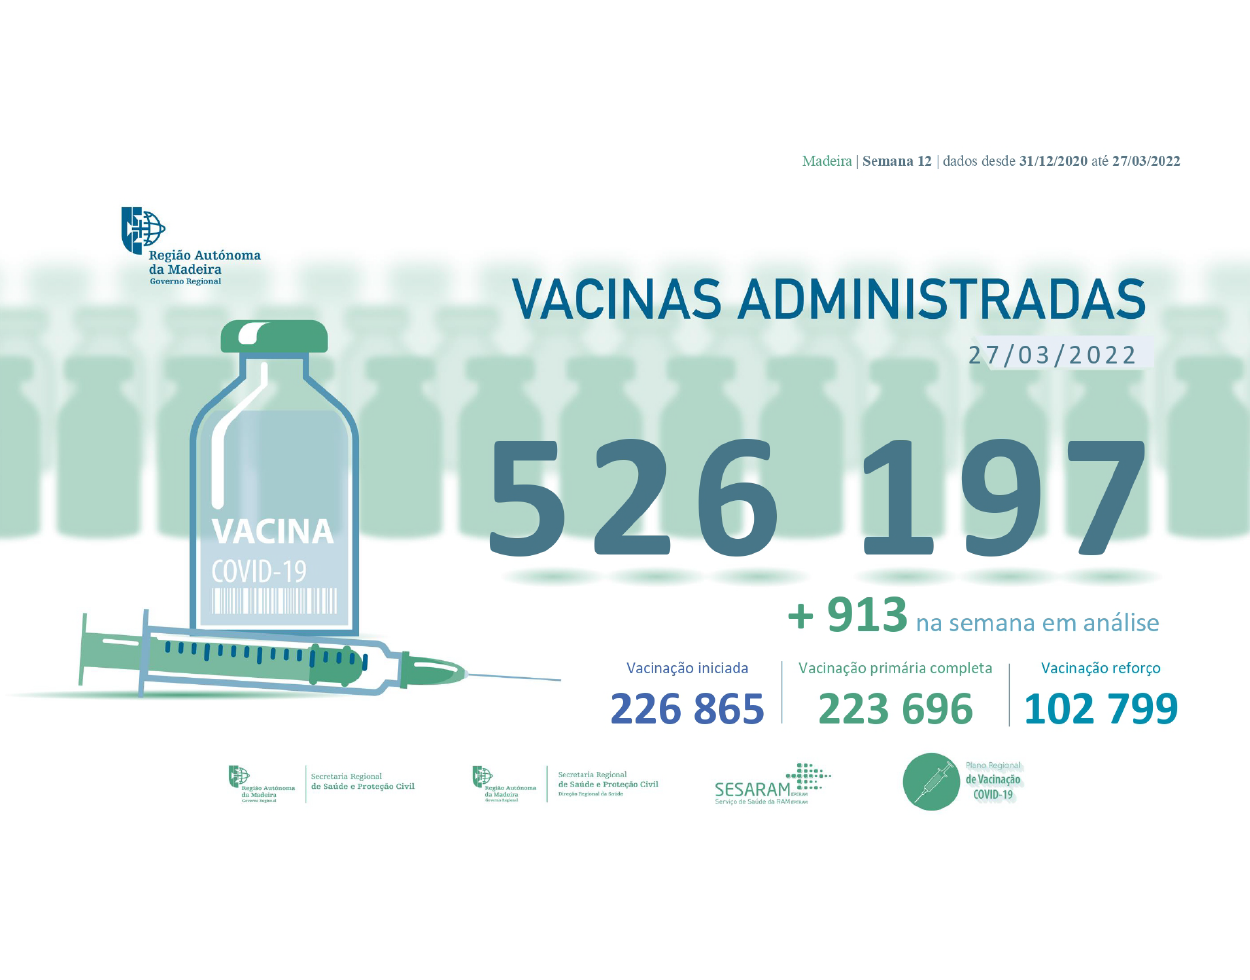 Administradas 526 197 vacinas contra a COVID-19 na RAM